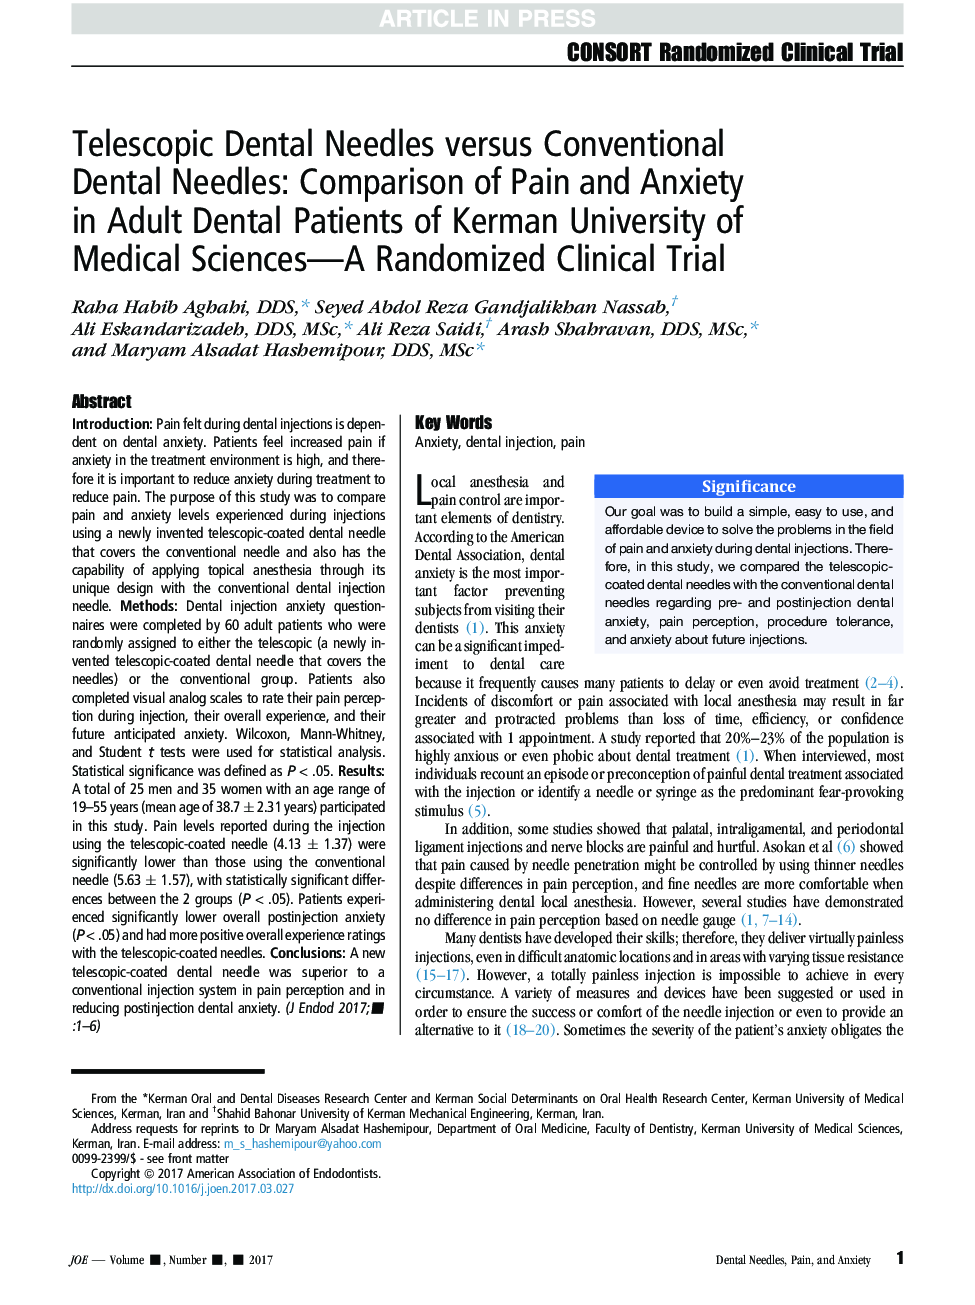 سوزن های دندان های تلسکوپی و سوزن های معمولی: مقایسه درد و اضطراب در بیماران دندان پزشکی دانشگاه علوم پزشکی کرمان - یک آزمایش بالینی تصادفی 